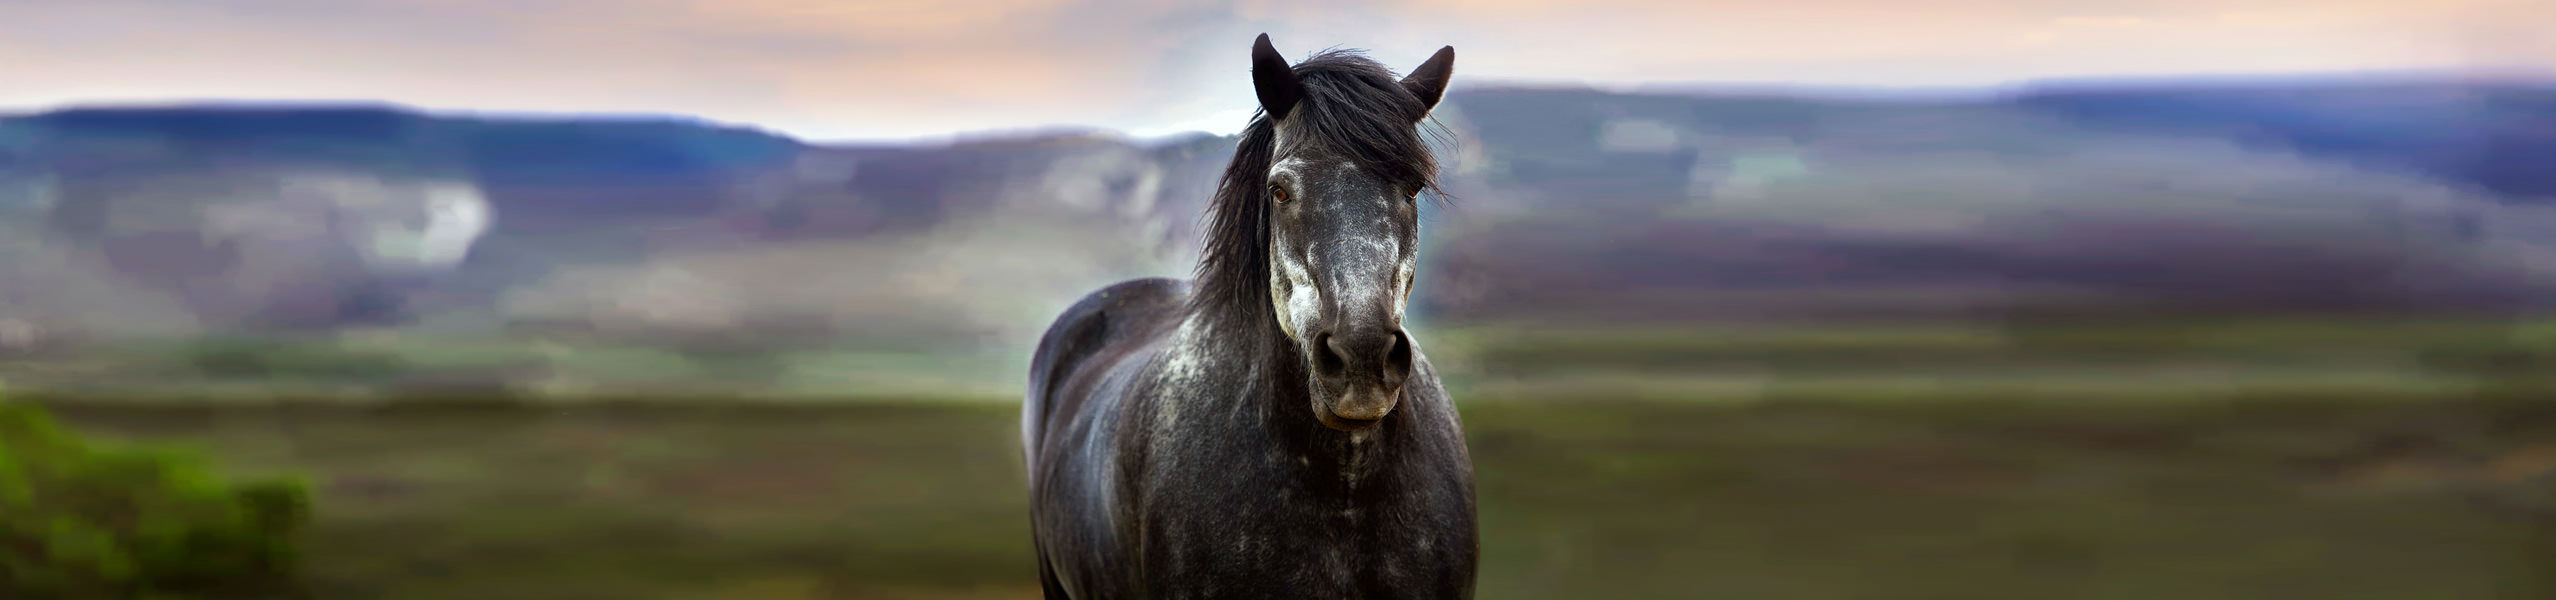 Hufrehe bei Pferden: erst erkennen dann richtig behandeln